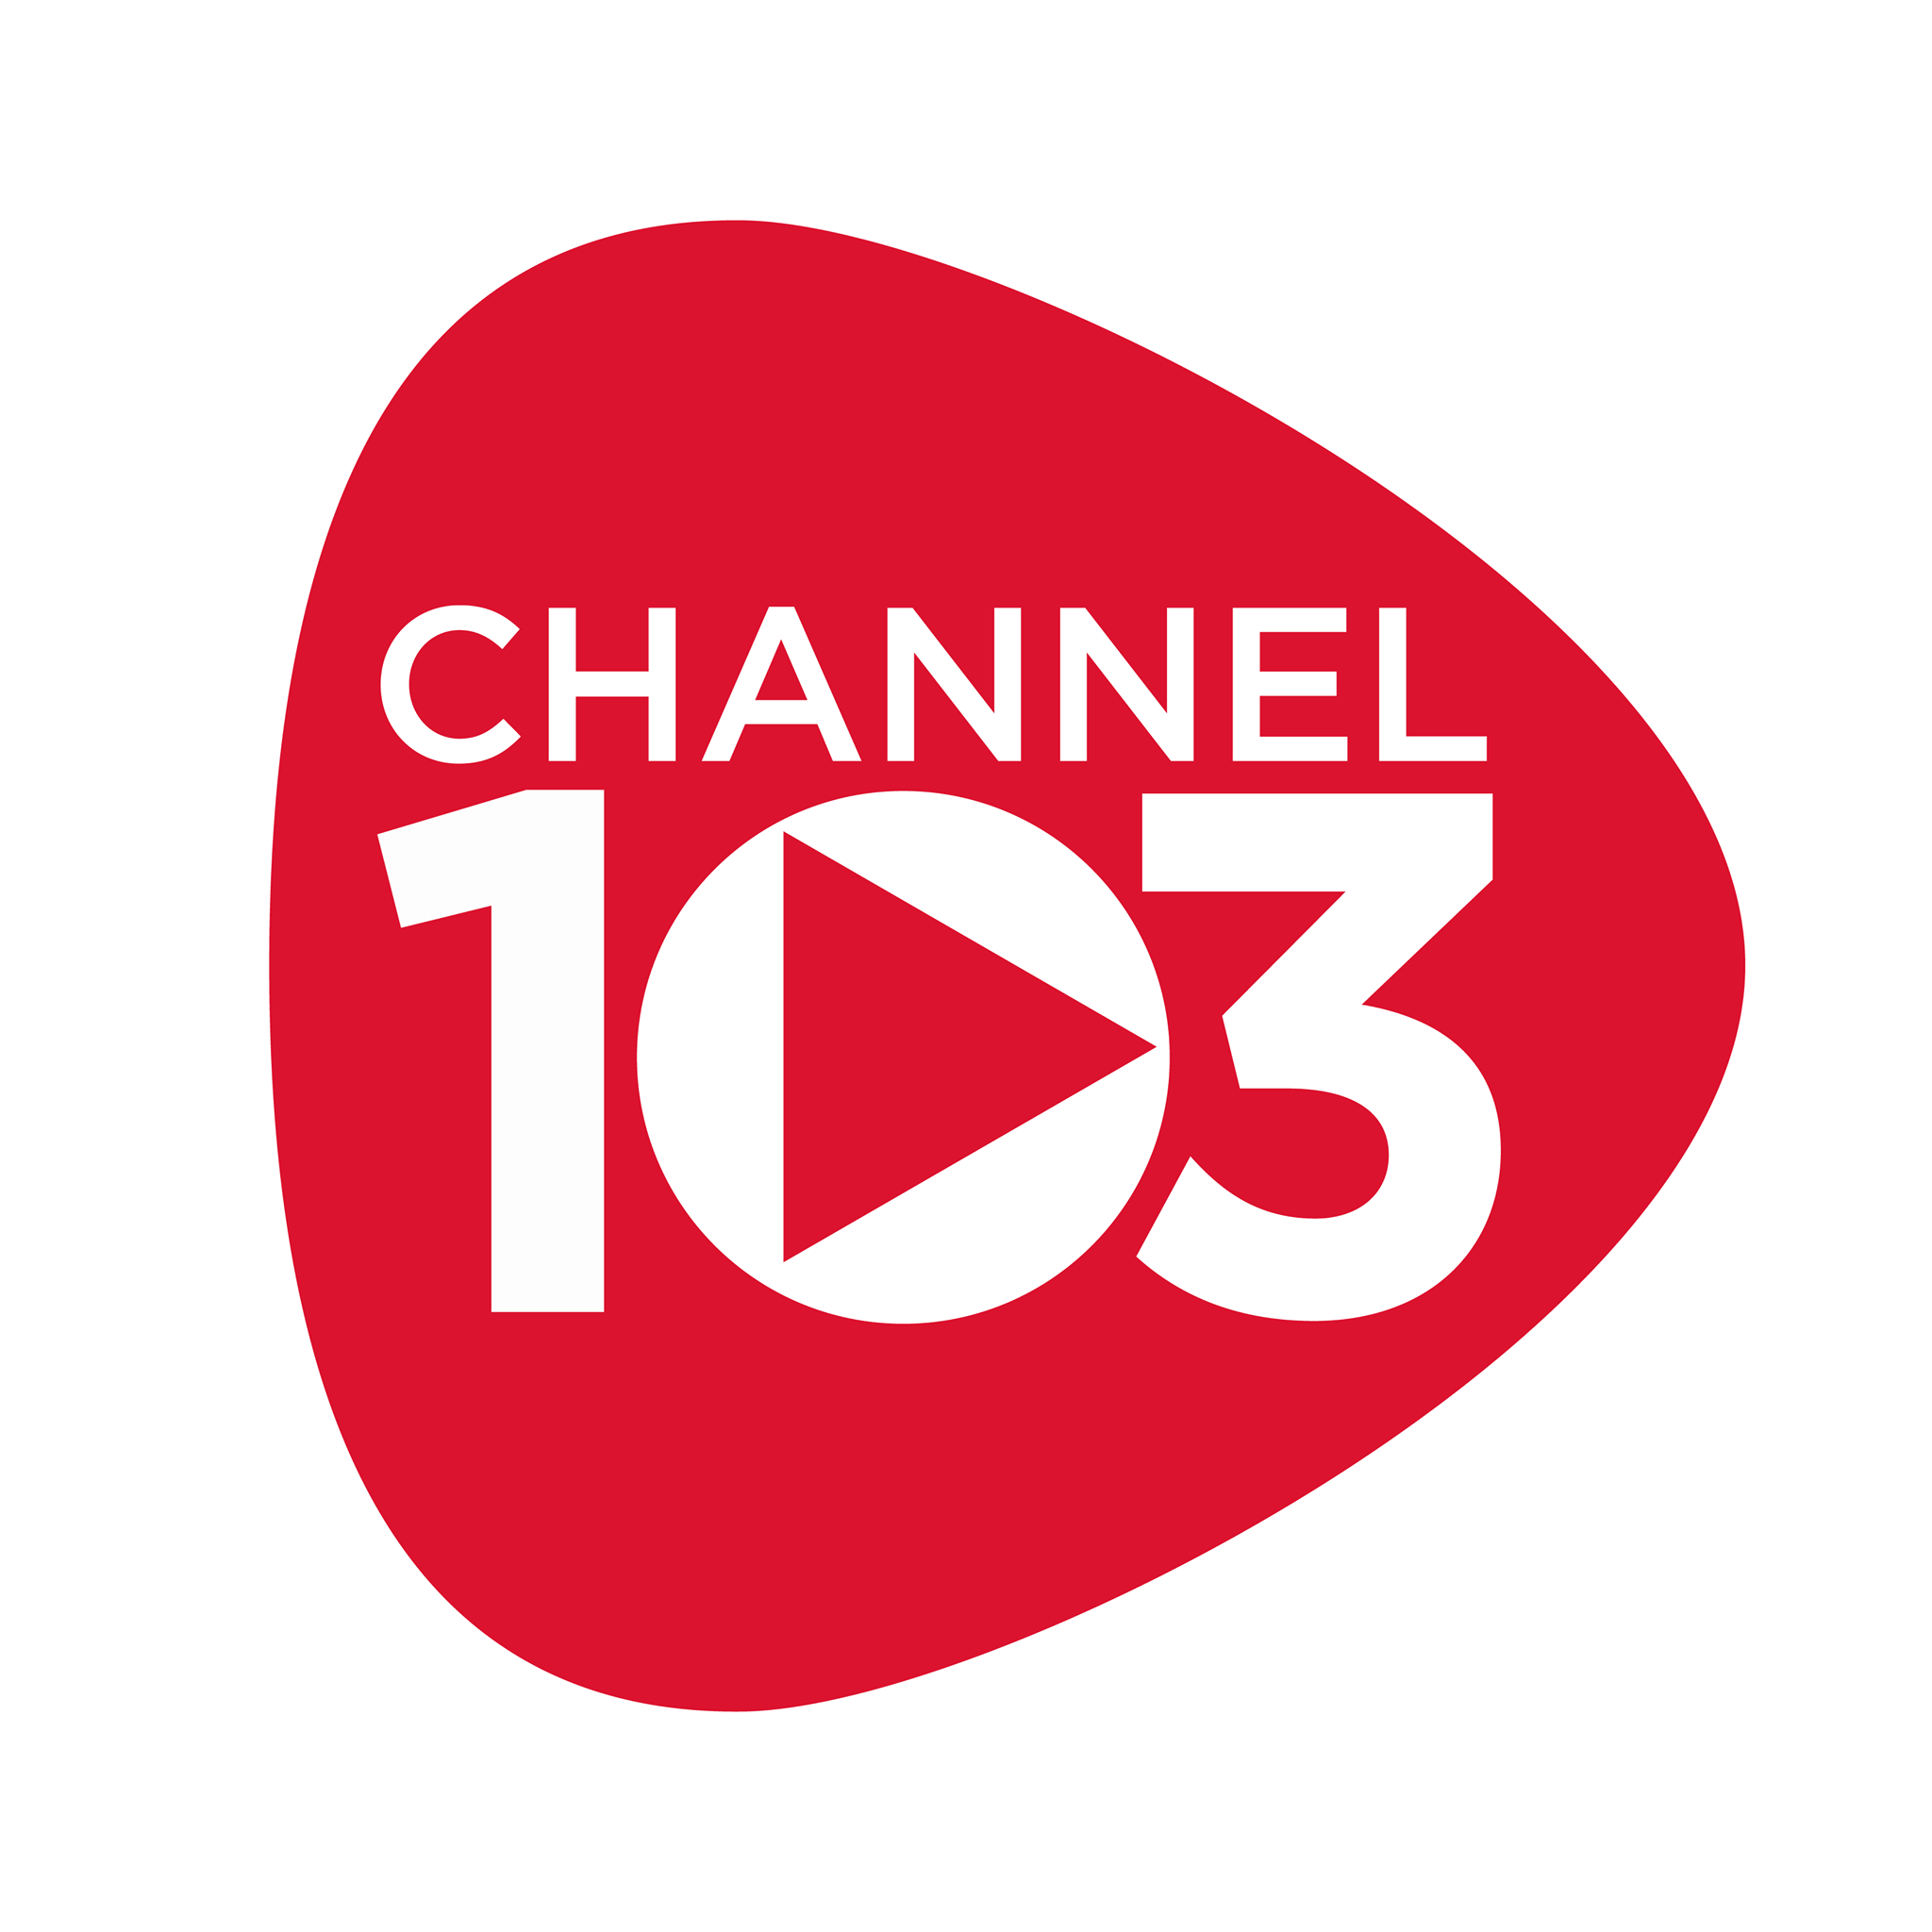 Radijo stotis Channel 103fm